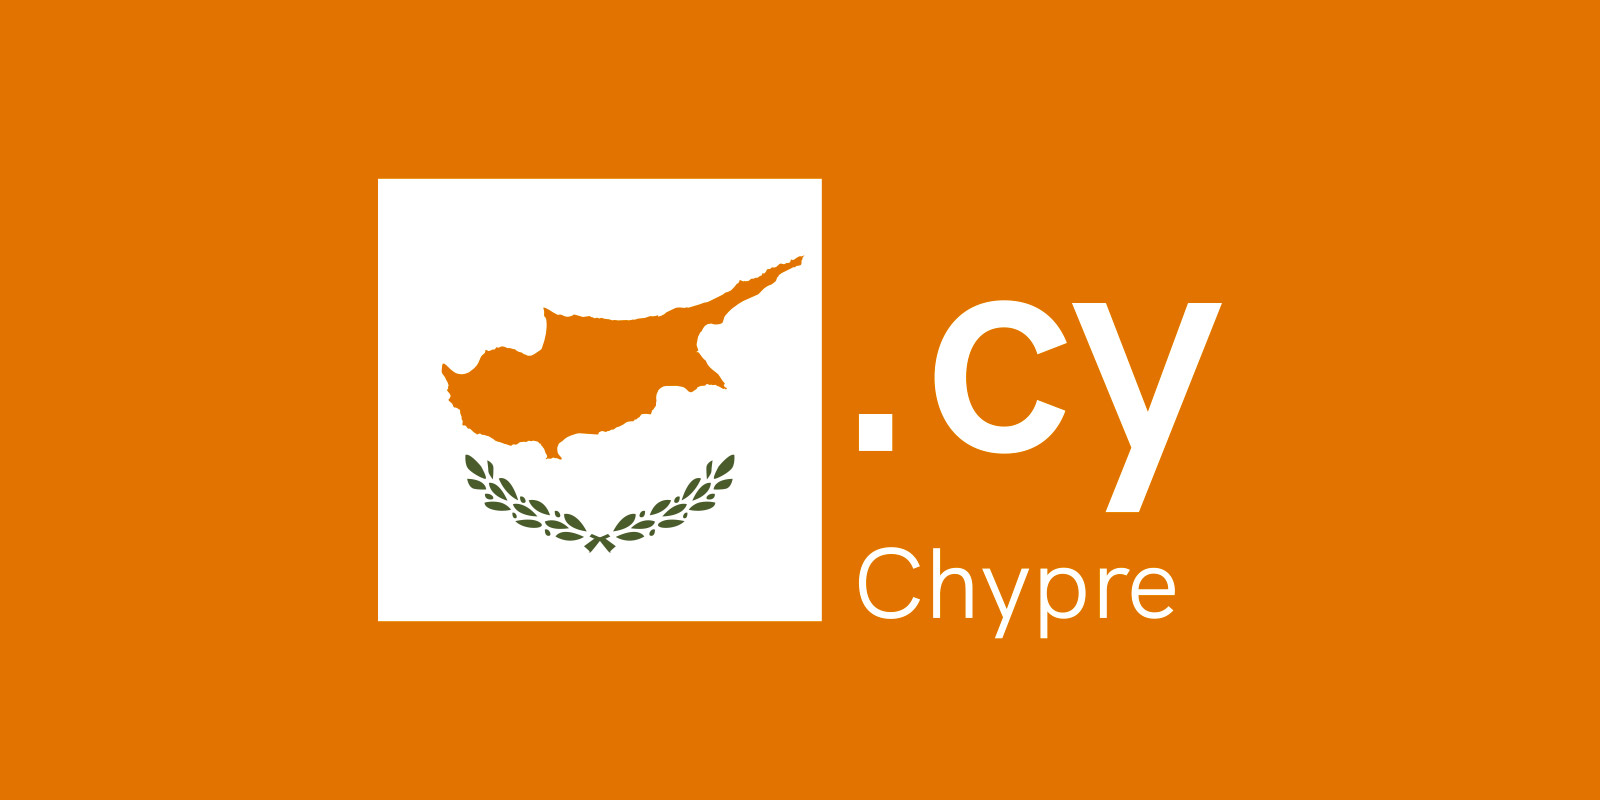 赛普勒斯（Cyprus）有自己的域名 — .CY  啦!